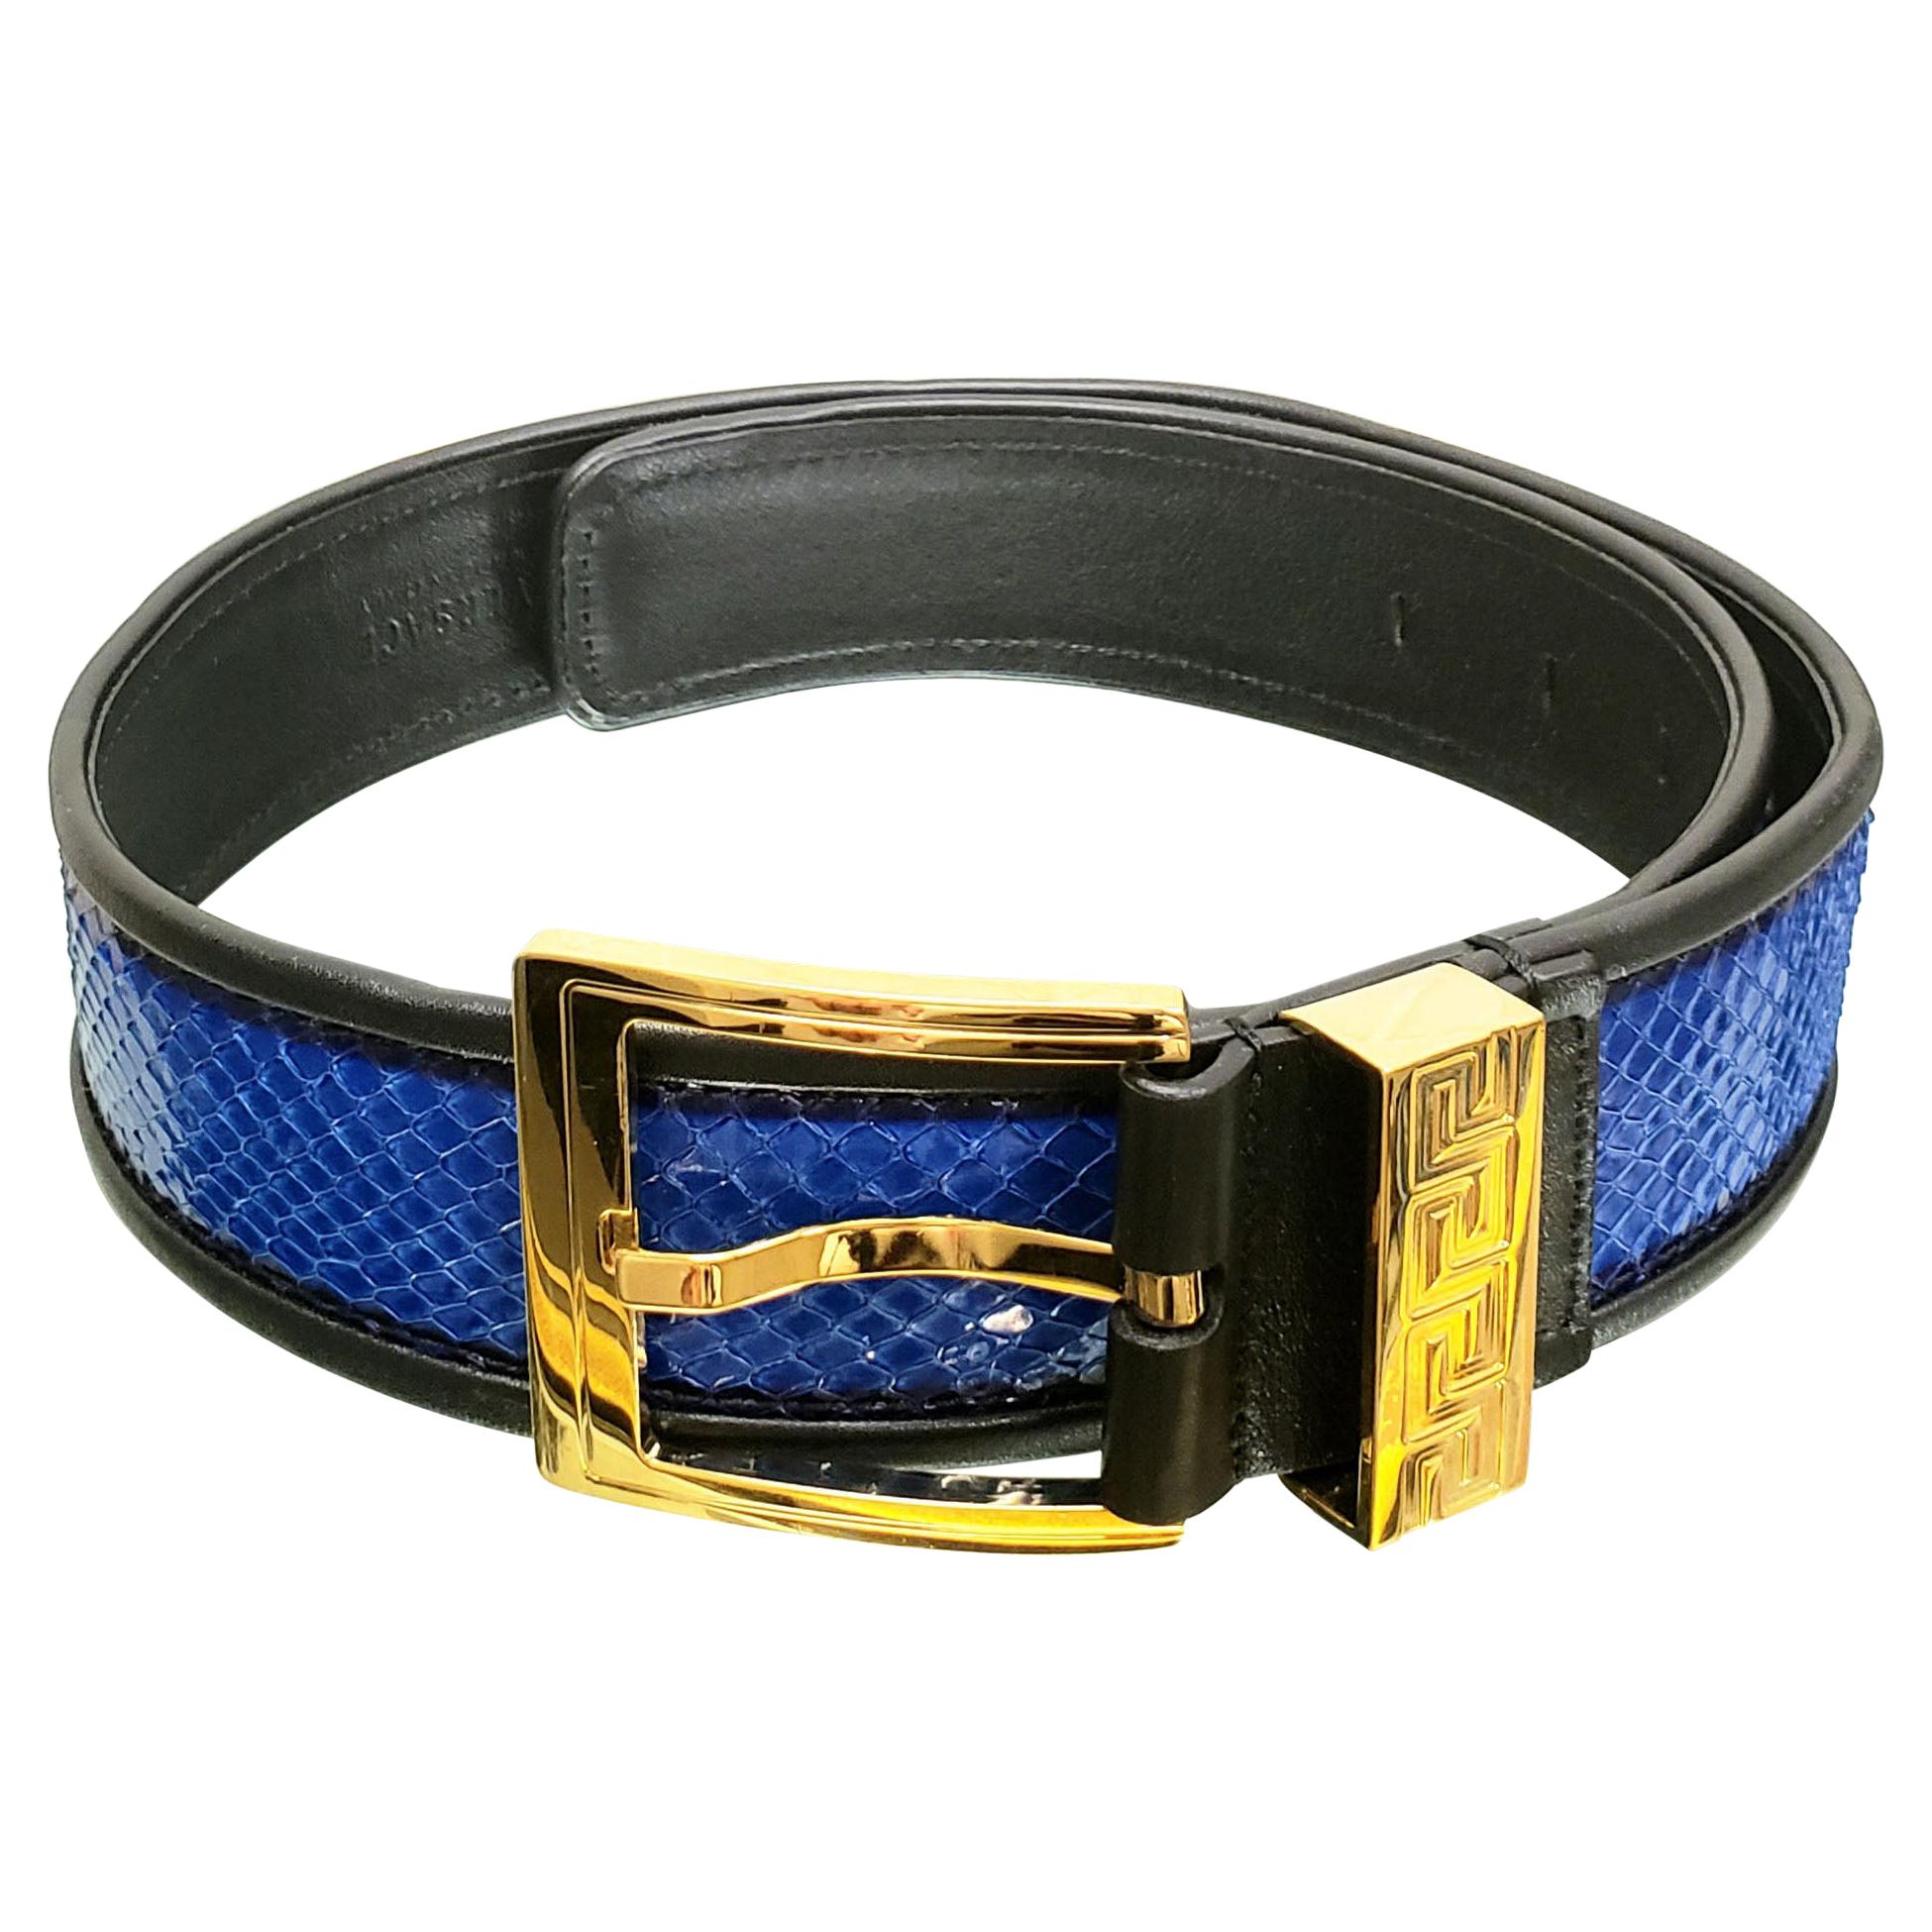 Chaussures de sport Versace en peau de serpent bleue avec bride à clé grenouille dorée 75/30, pré/automne 2012 L n° 5 en vente